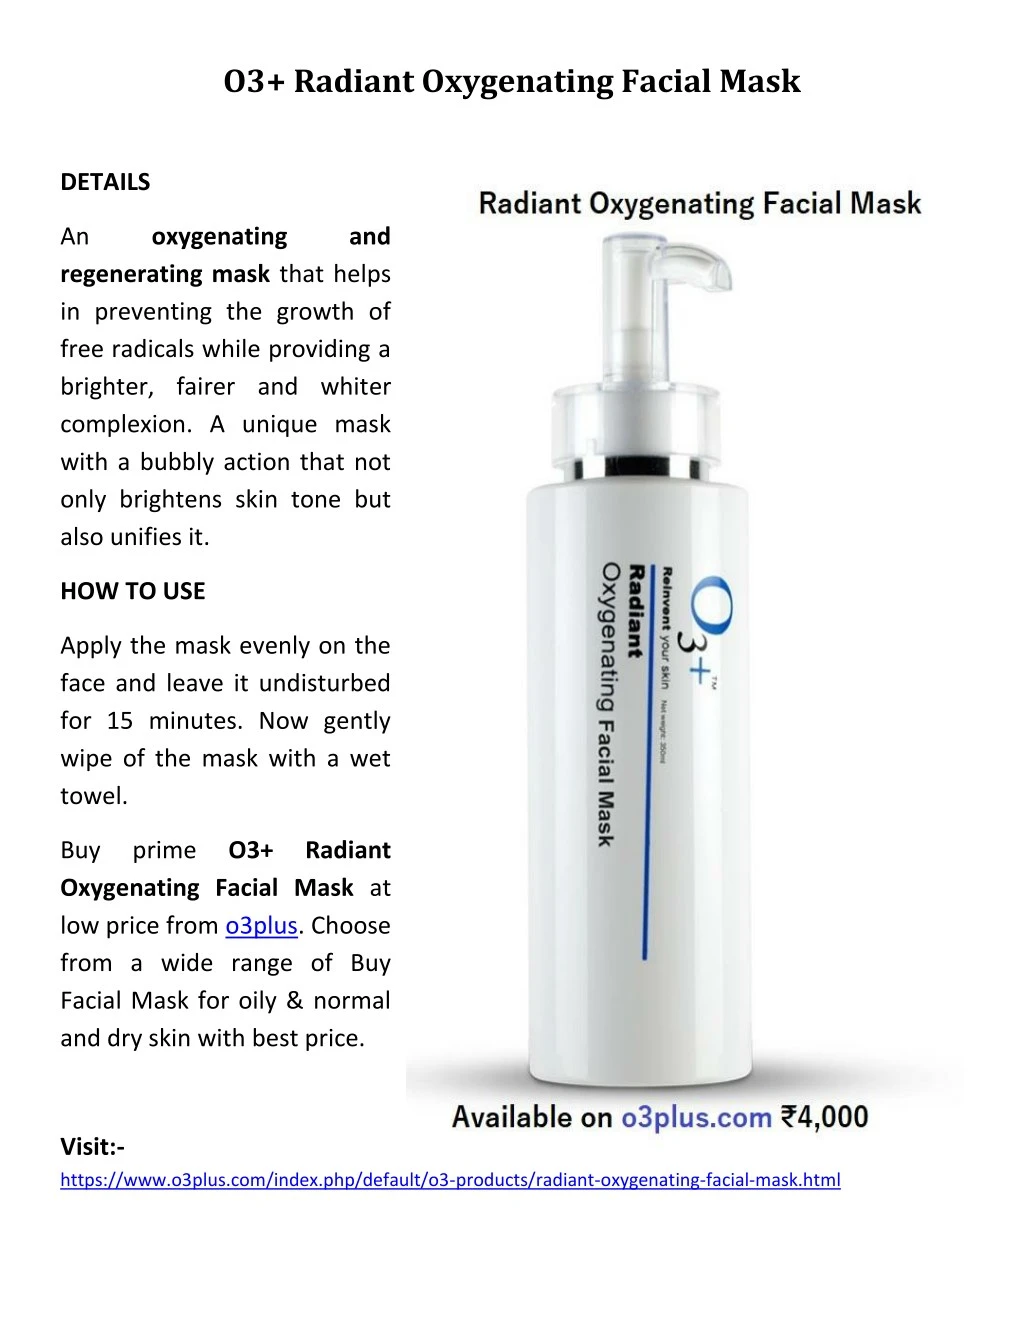 o3 radiant oxygenating facial mask